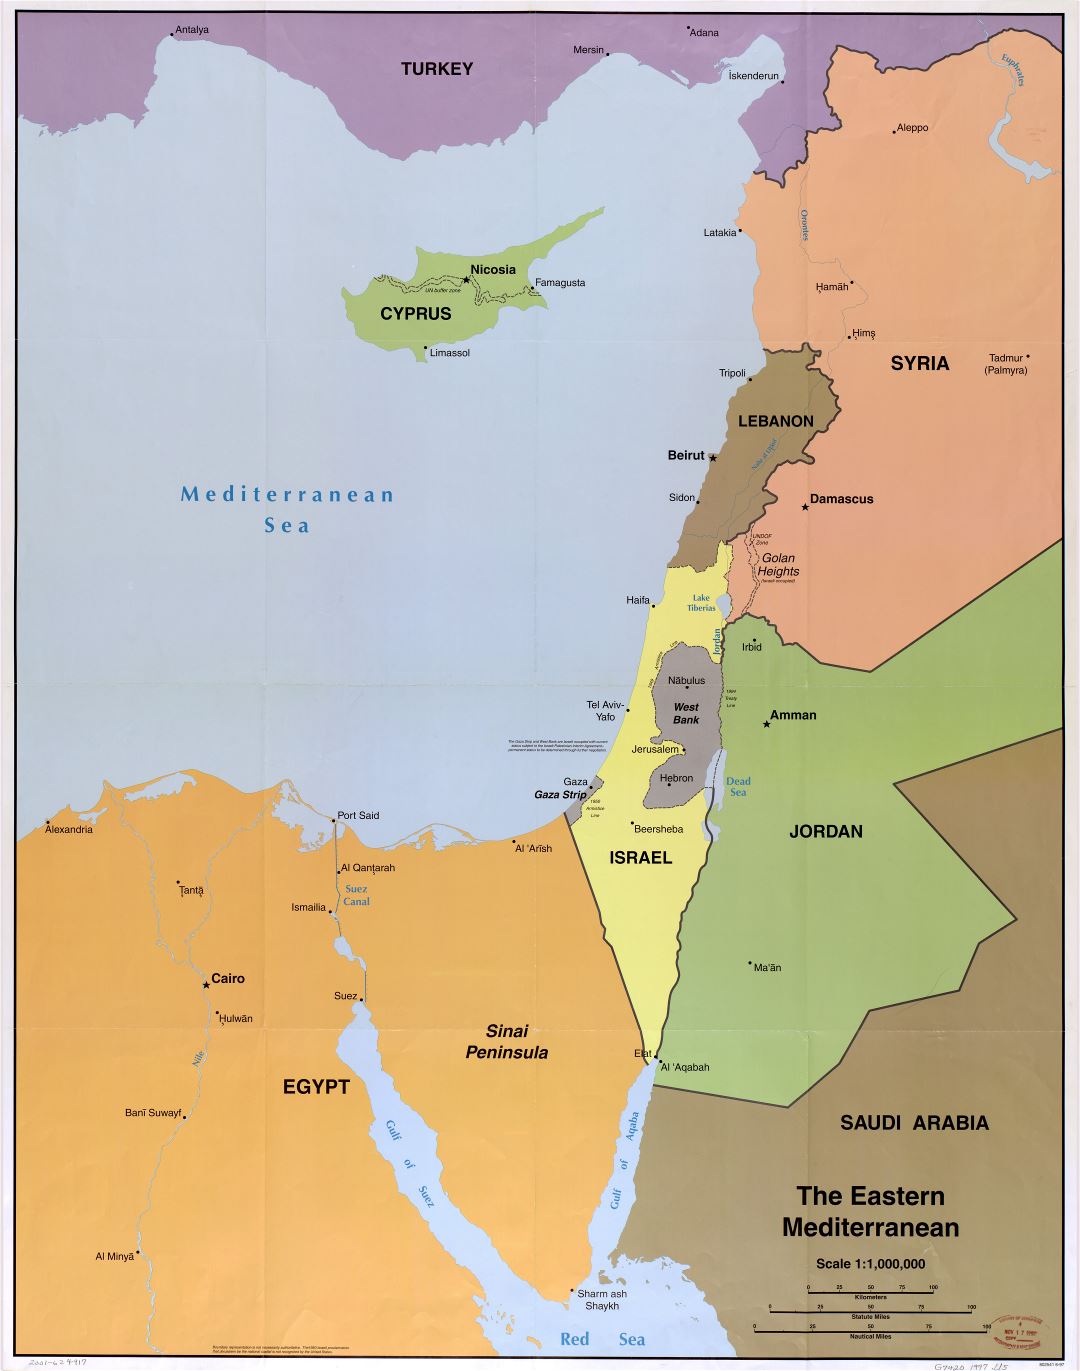 Grande detallado mapa político del Mediterráneo Oriental con principales ciudades - 1997